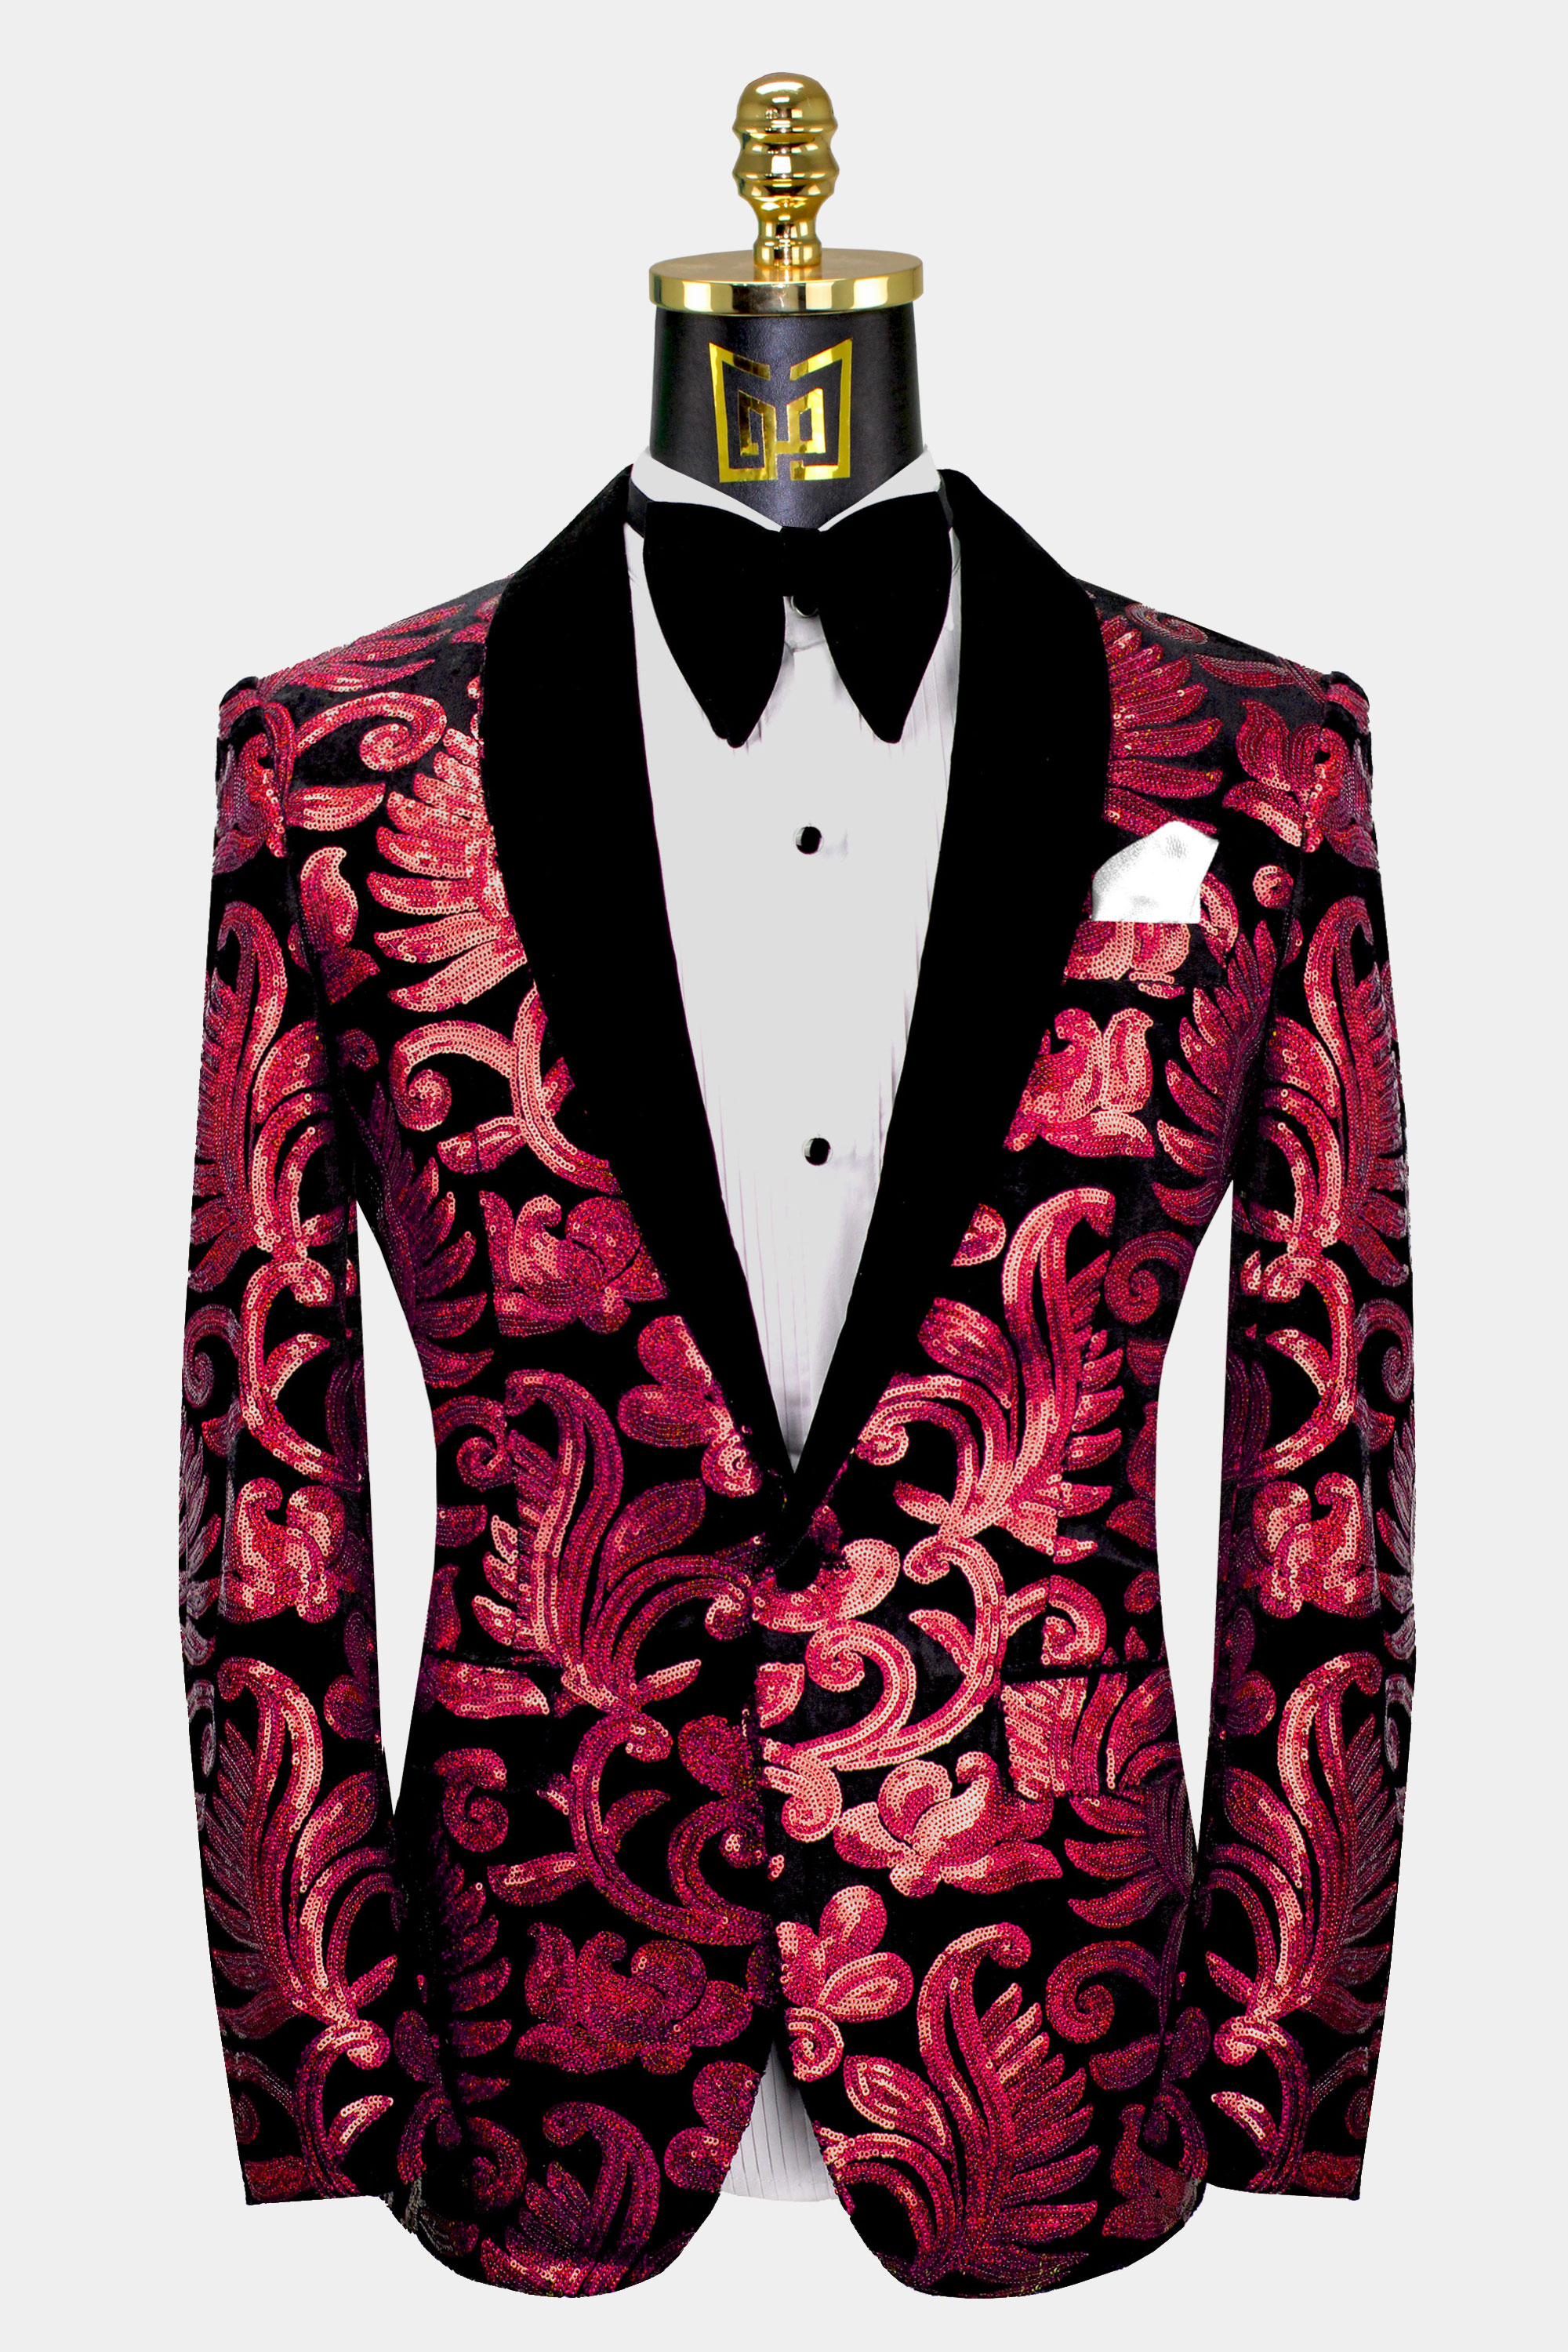 Red Tuxedos For Weddings | art-kk.com